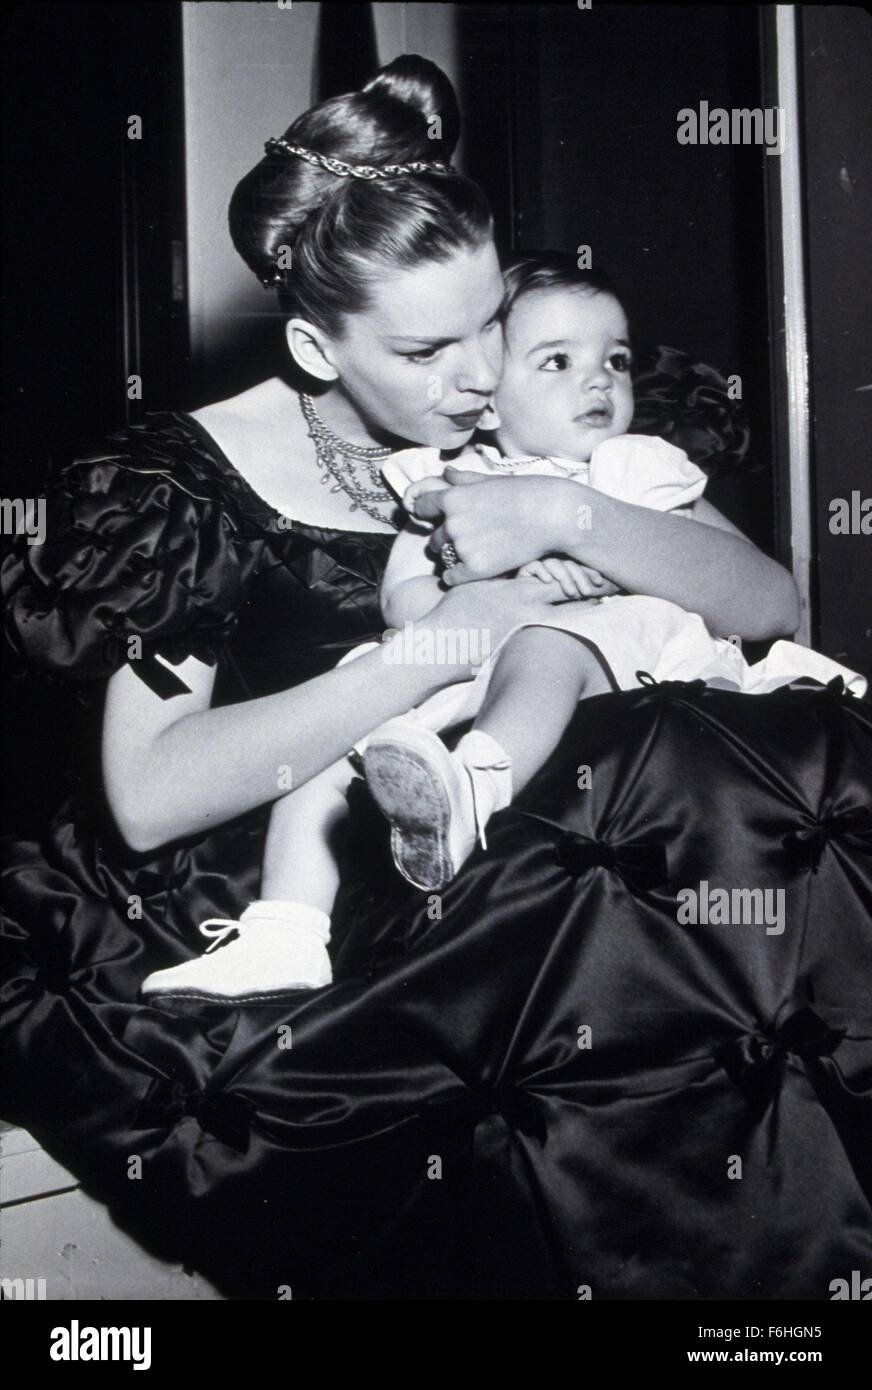 1948, Filmtitel: PIRATE, Regie: VINCENTE MINNELLI, Studio: MGM, abgebildet: JUDY GARLAND, LIZA MINNELLI. (Bild Kredit: SNAP) Stockfoto